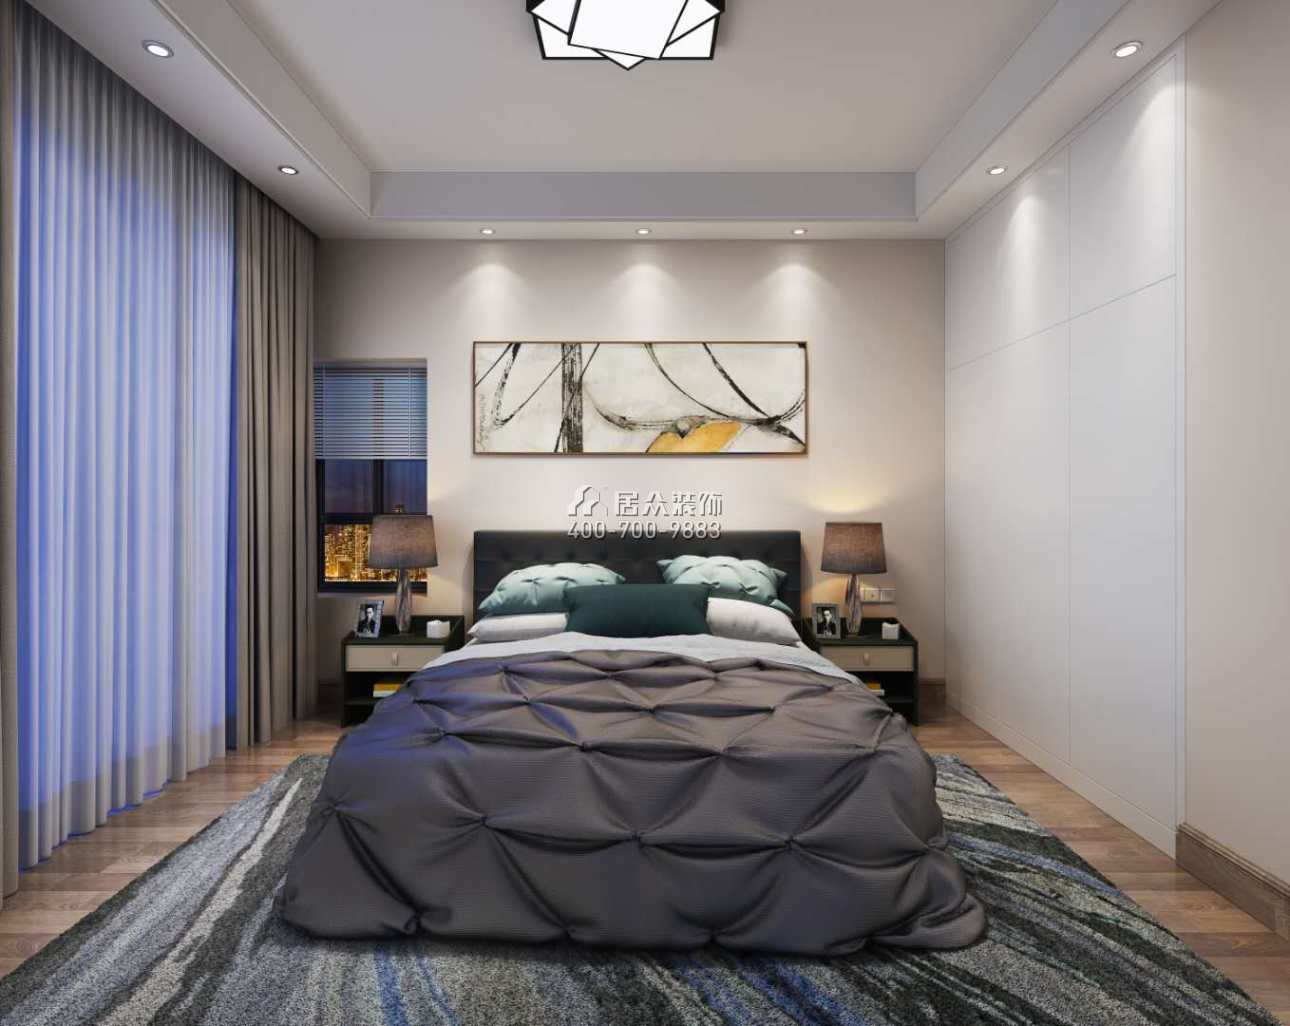 蔚藍海岸三期110平方米現代簡約風格平層戶型臥室裝修效果圖